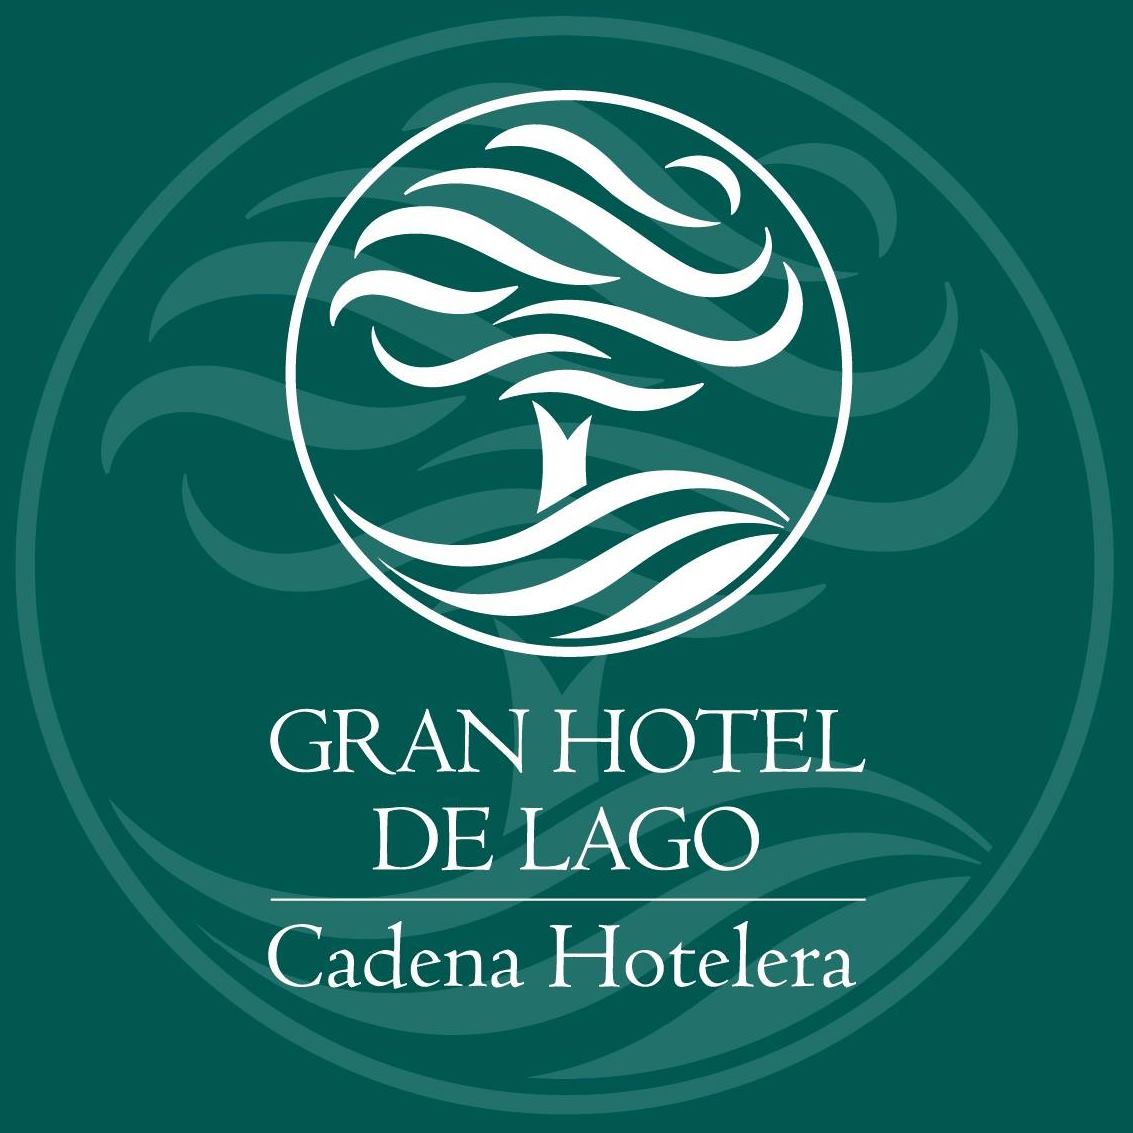 Cadena Hotelera Gran Hotel de Lago